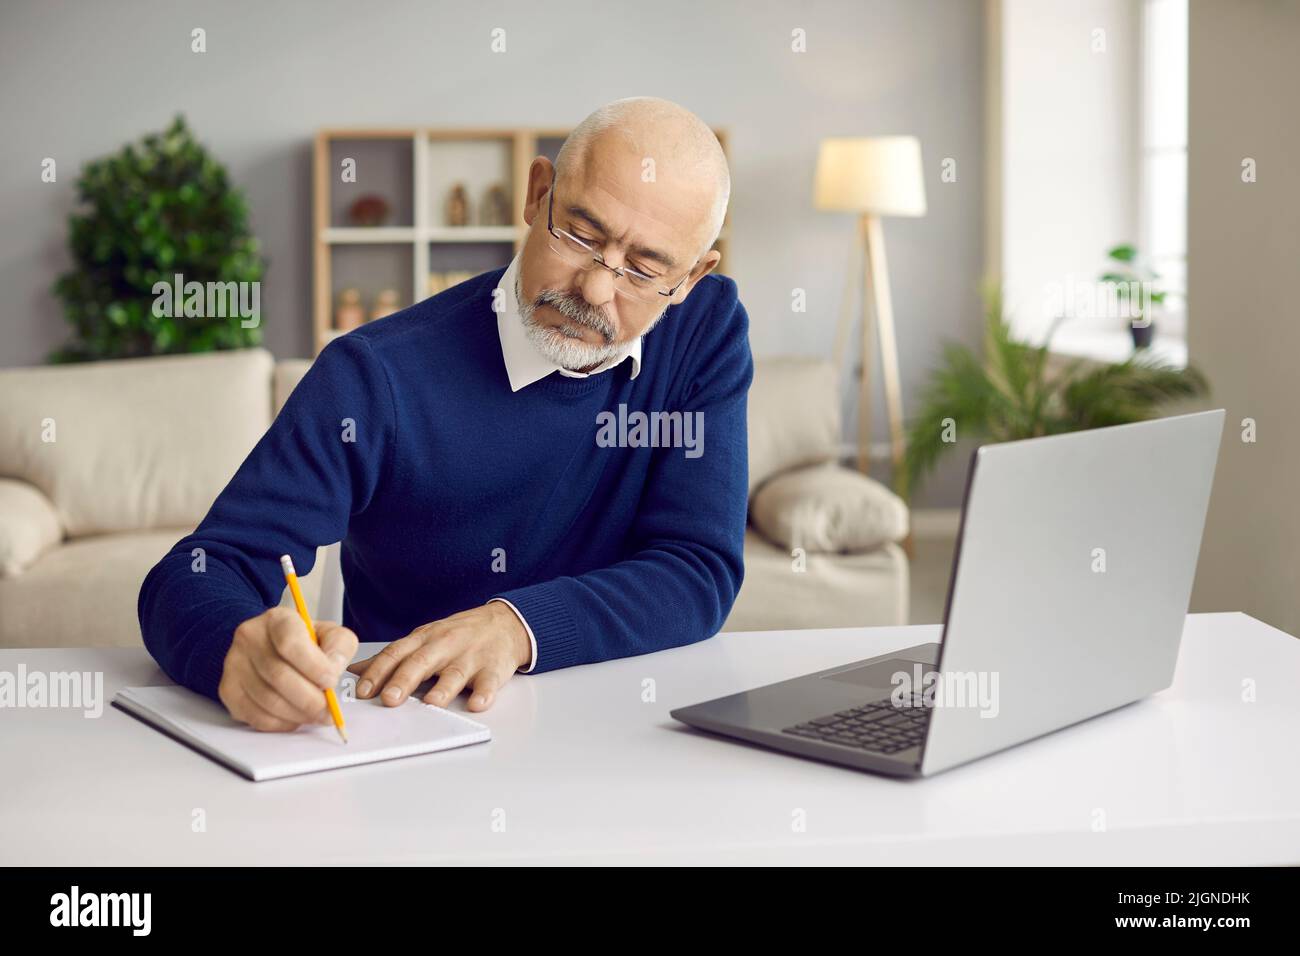 Un homme sérieux et mature travaille sur l'ordinateur pour prendre des notes Banque D'Images